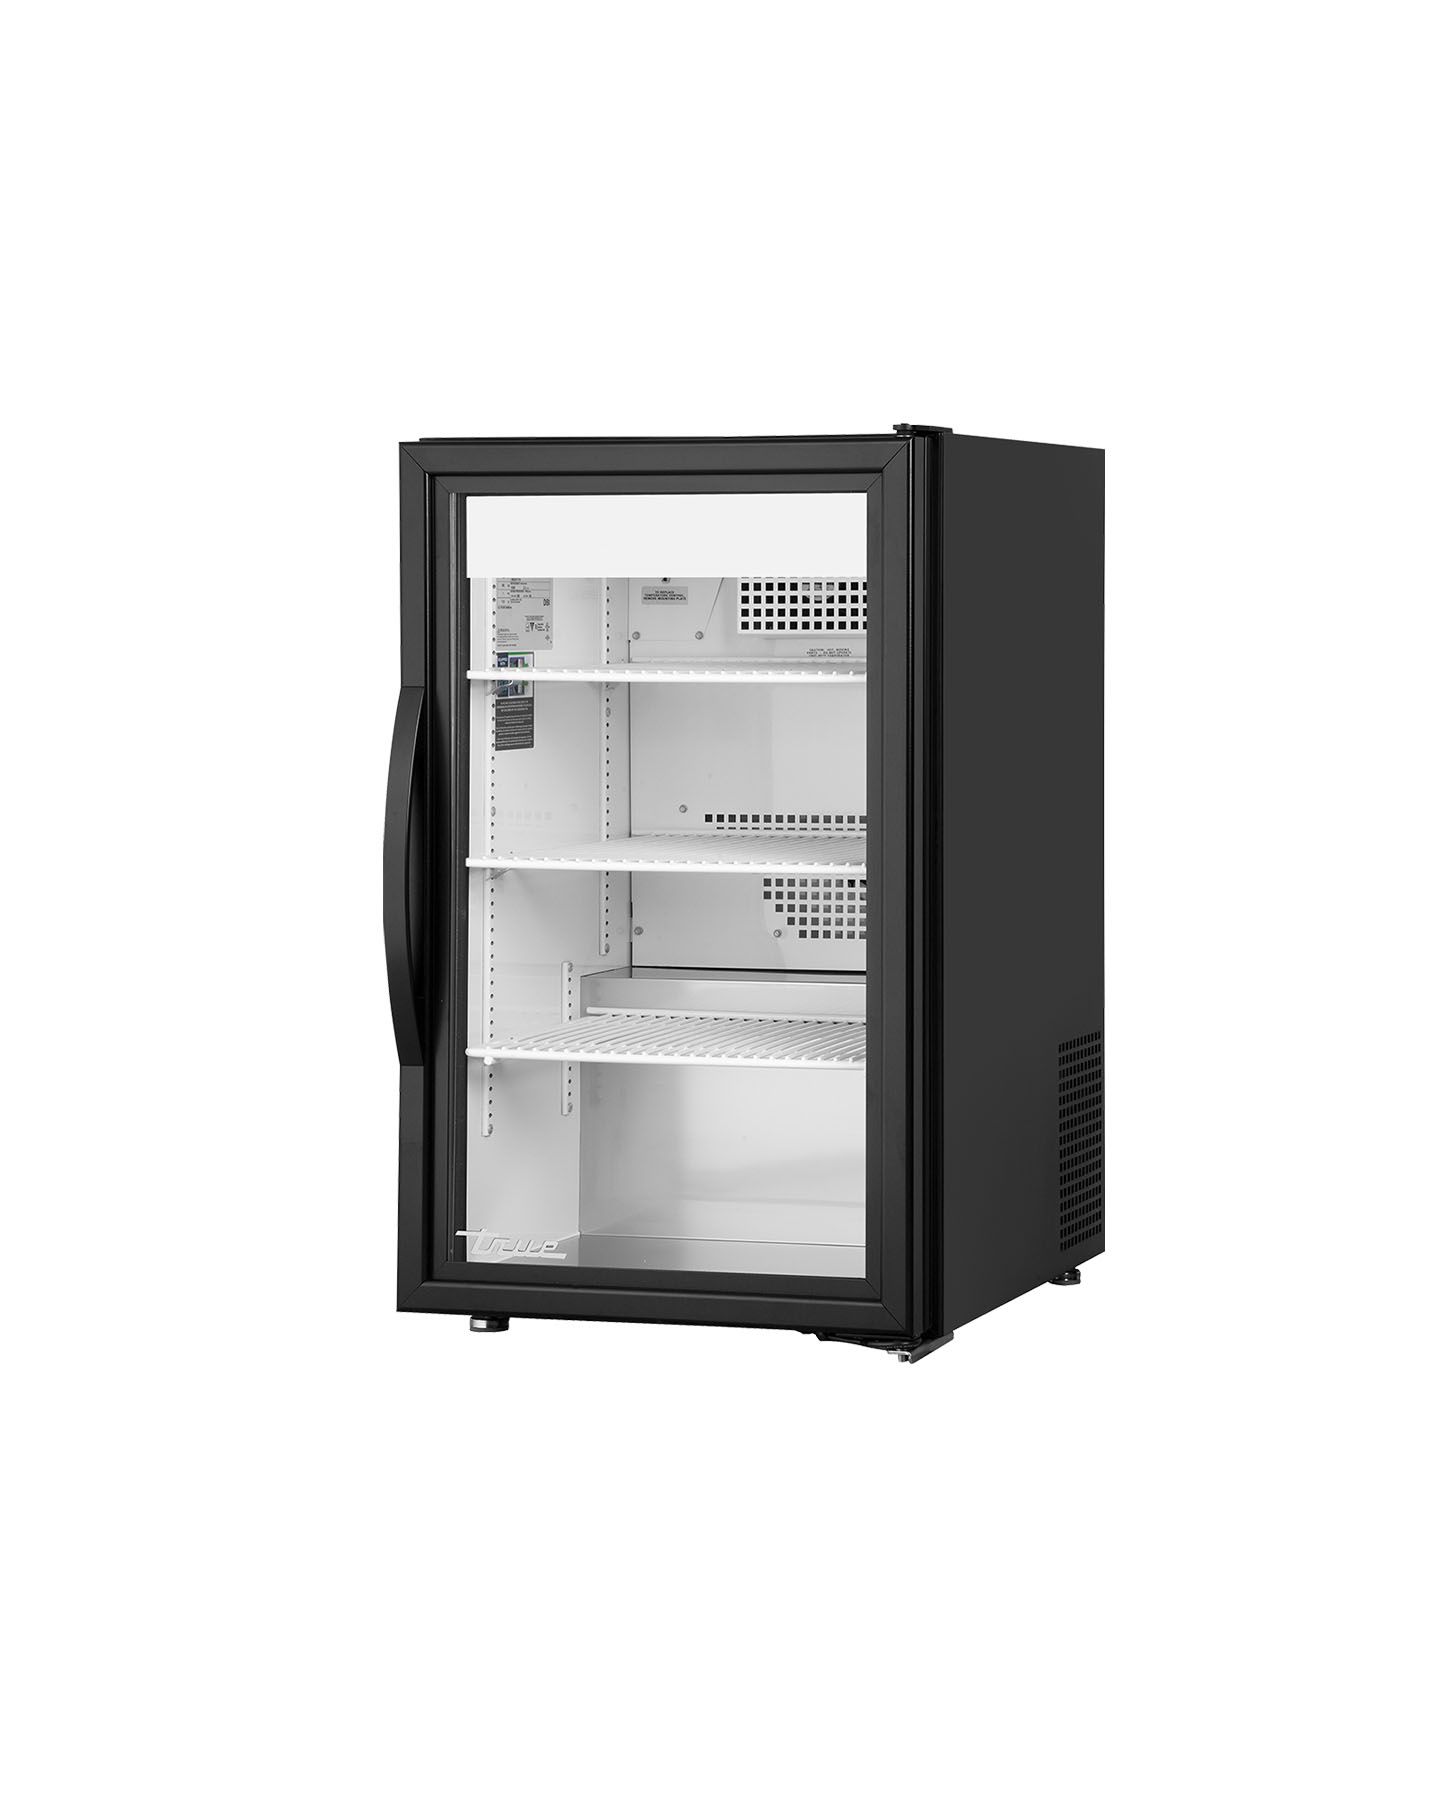 True Refrigeration GDM-Serie